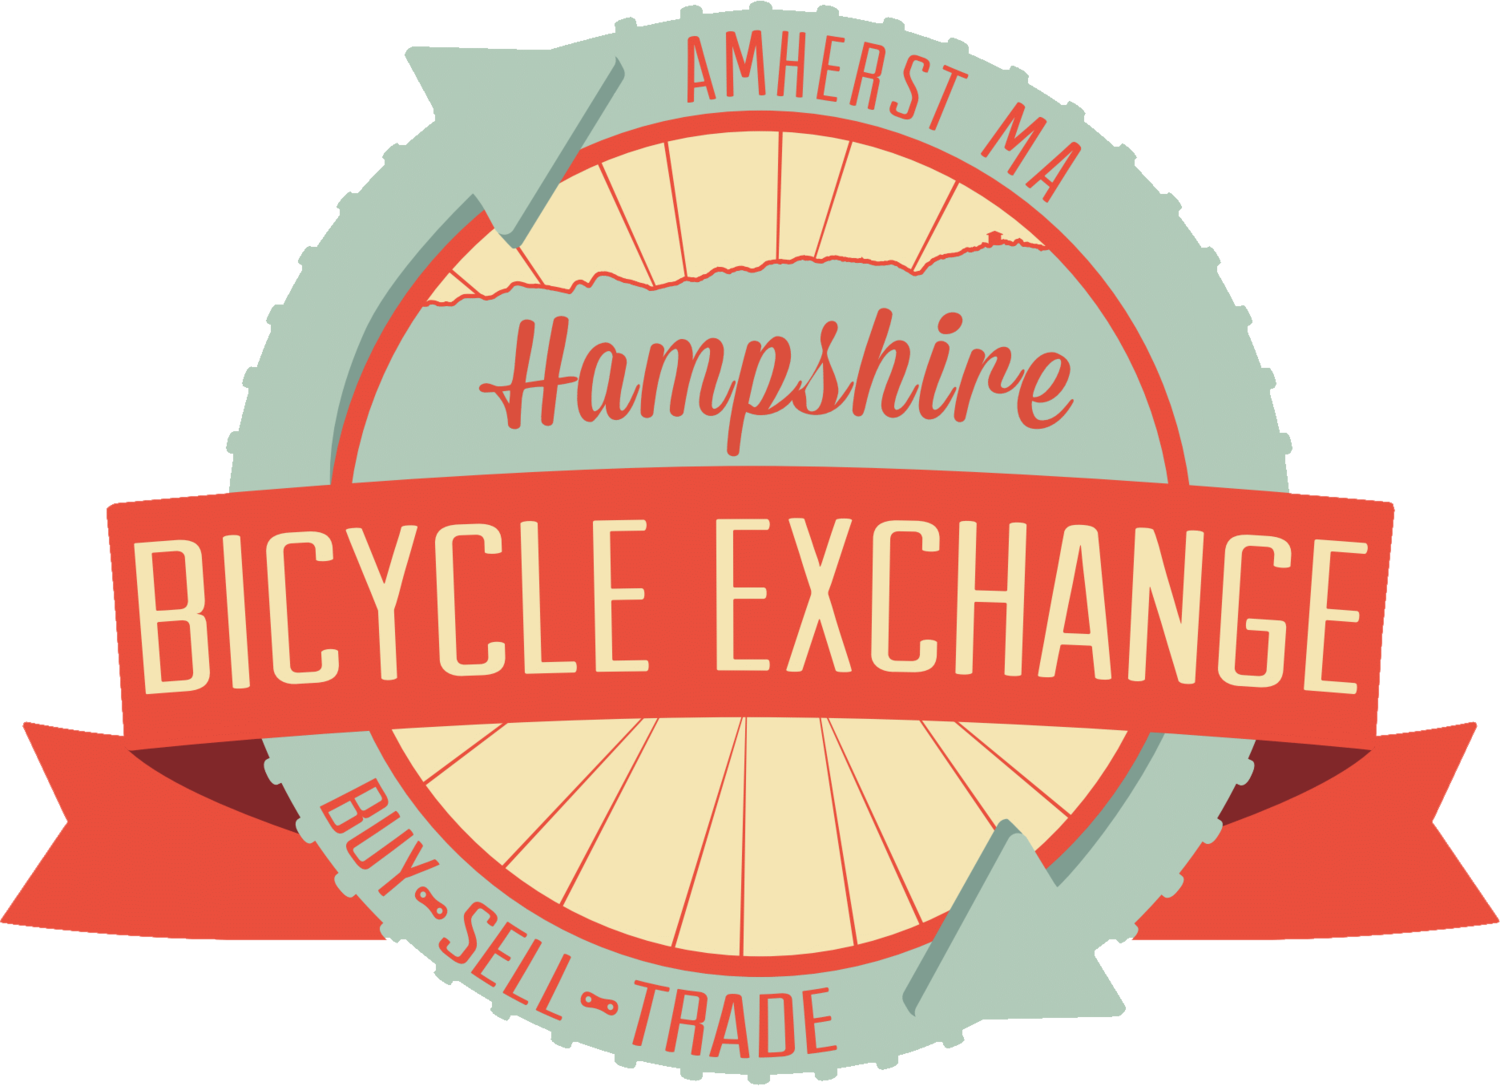 Hampshire Bicycle Exchange